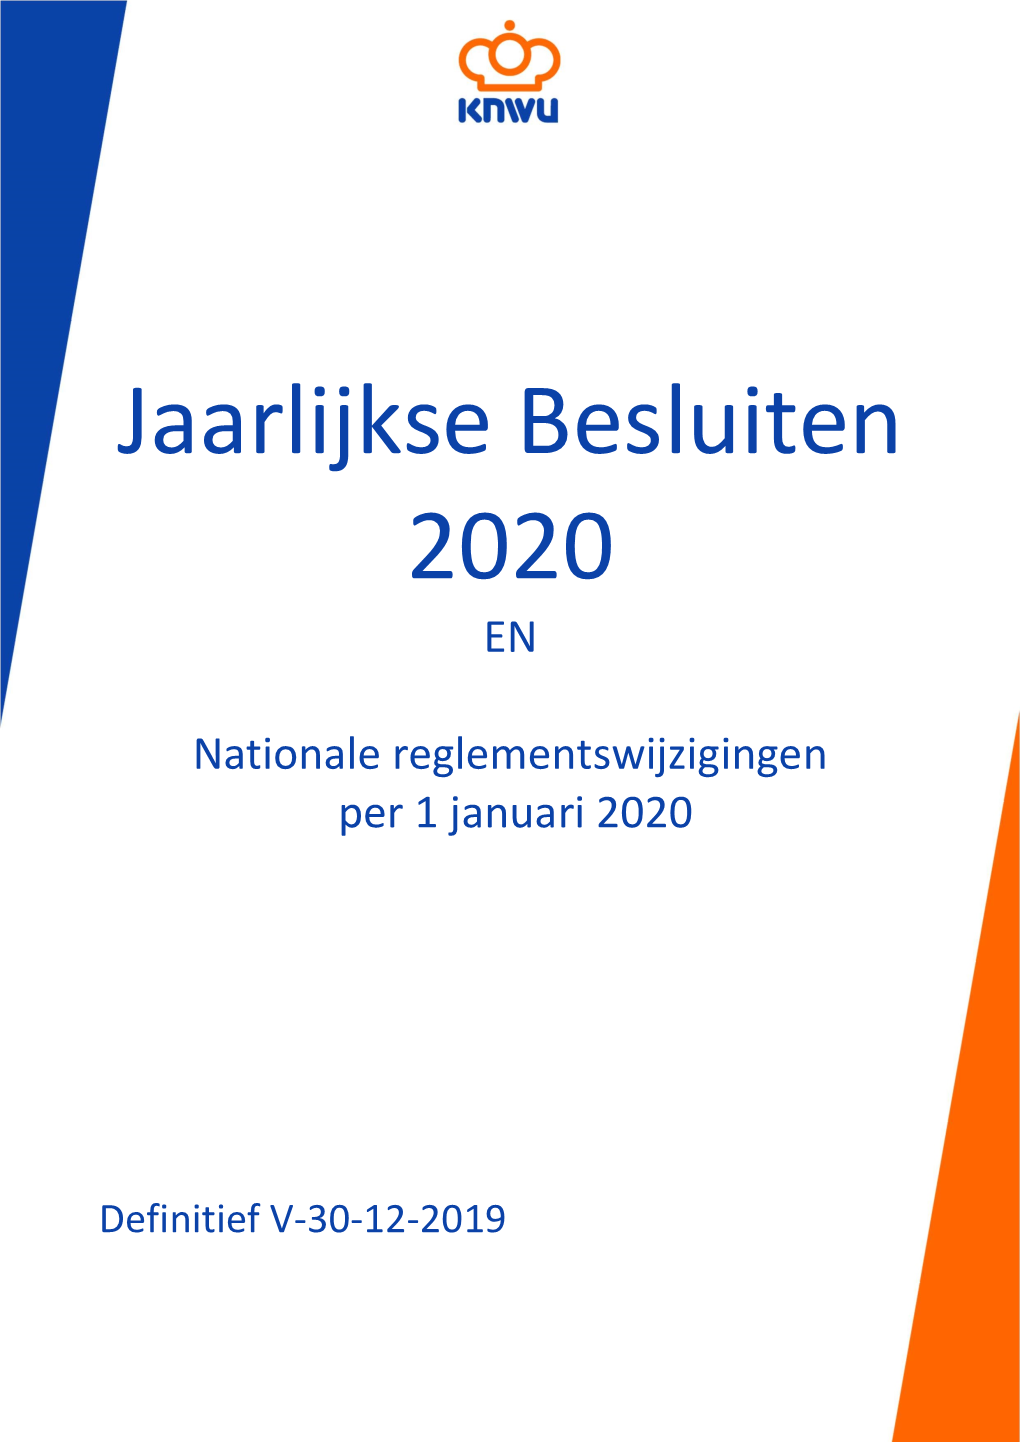 Jaarlijkse Besluiten 2020 EN